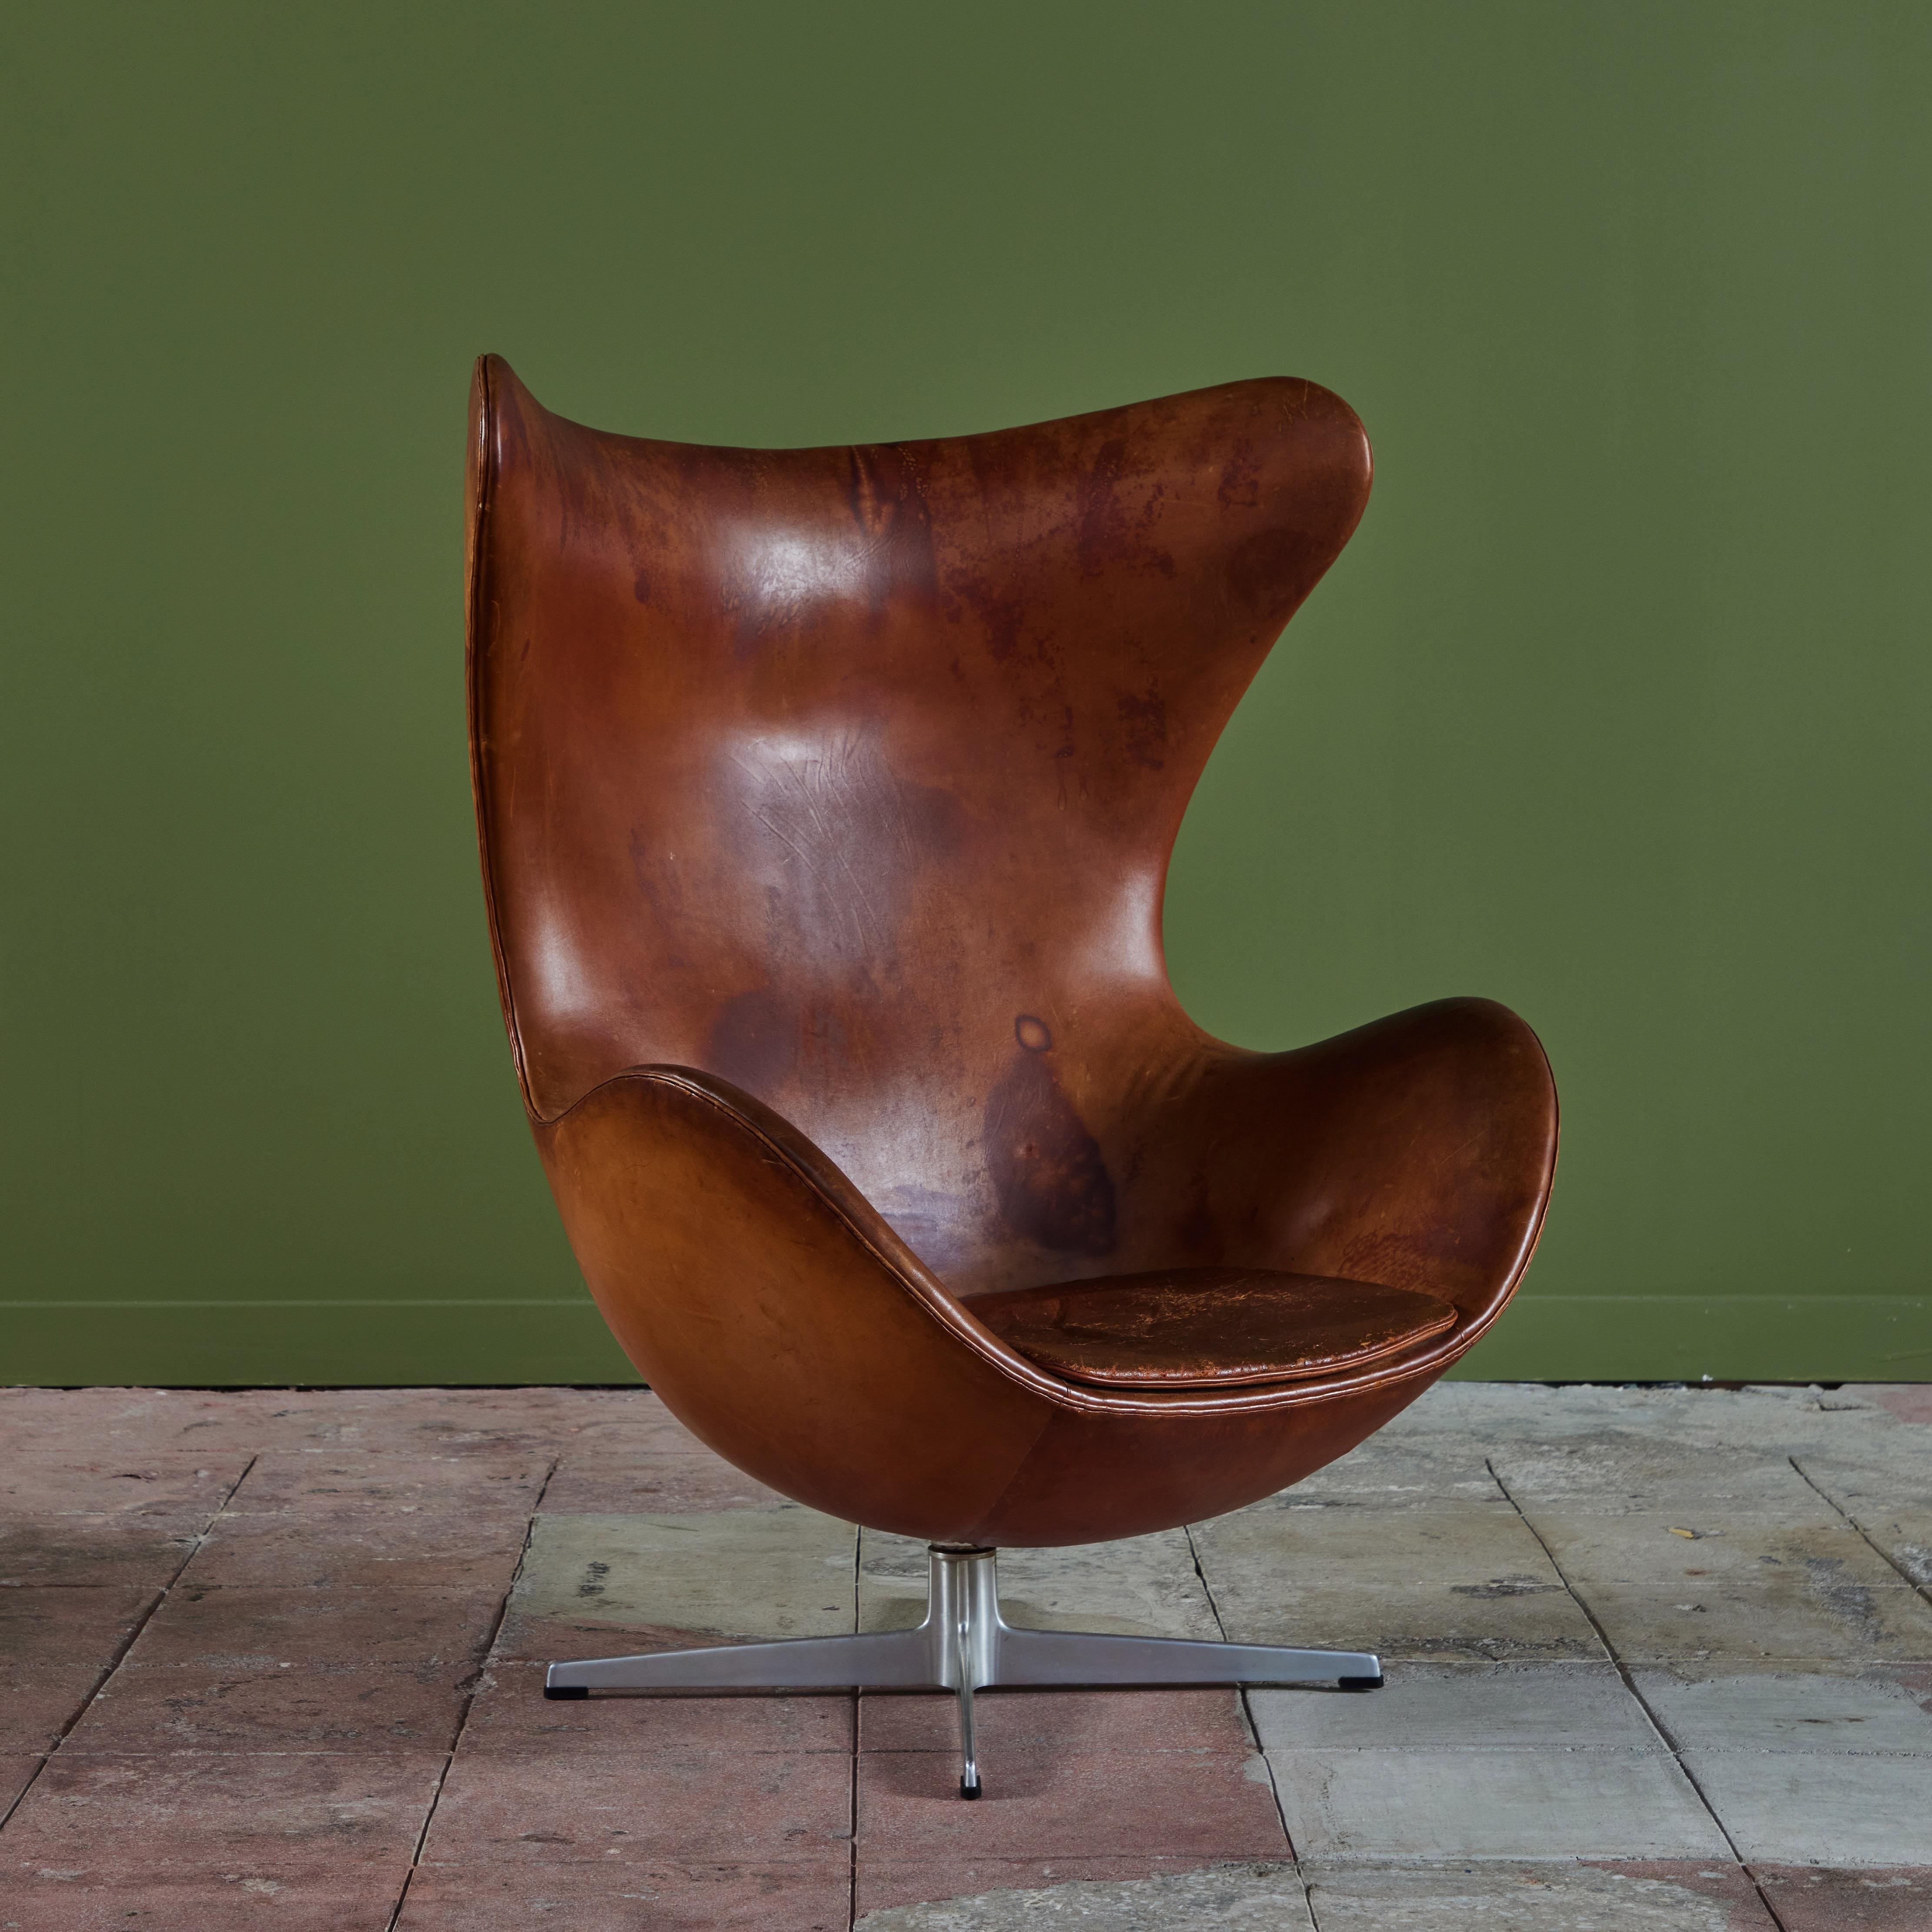 La icónica silla huevo diseñada por Arne Jacobsen, c.1960, Dinamarca. La silla presenta su rica piel original de color silla de montar con su propia pátina distintiva. La silla de respaldo alto tiene un cojín de asiento y gira 360° sobre una base de